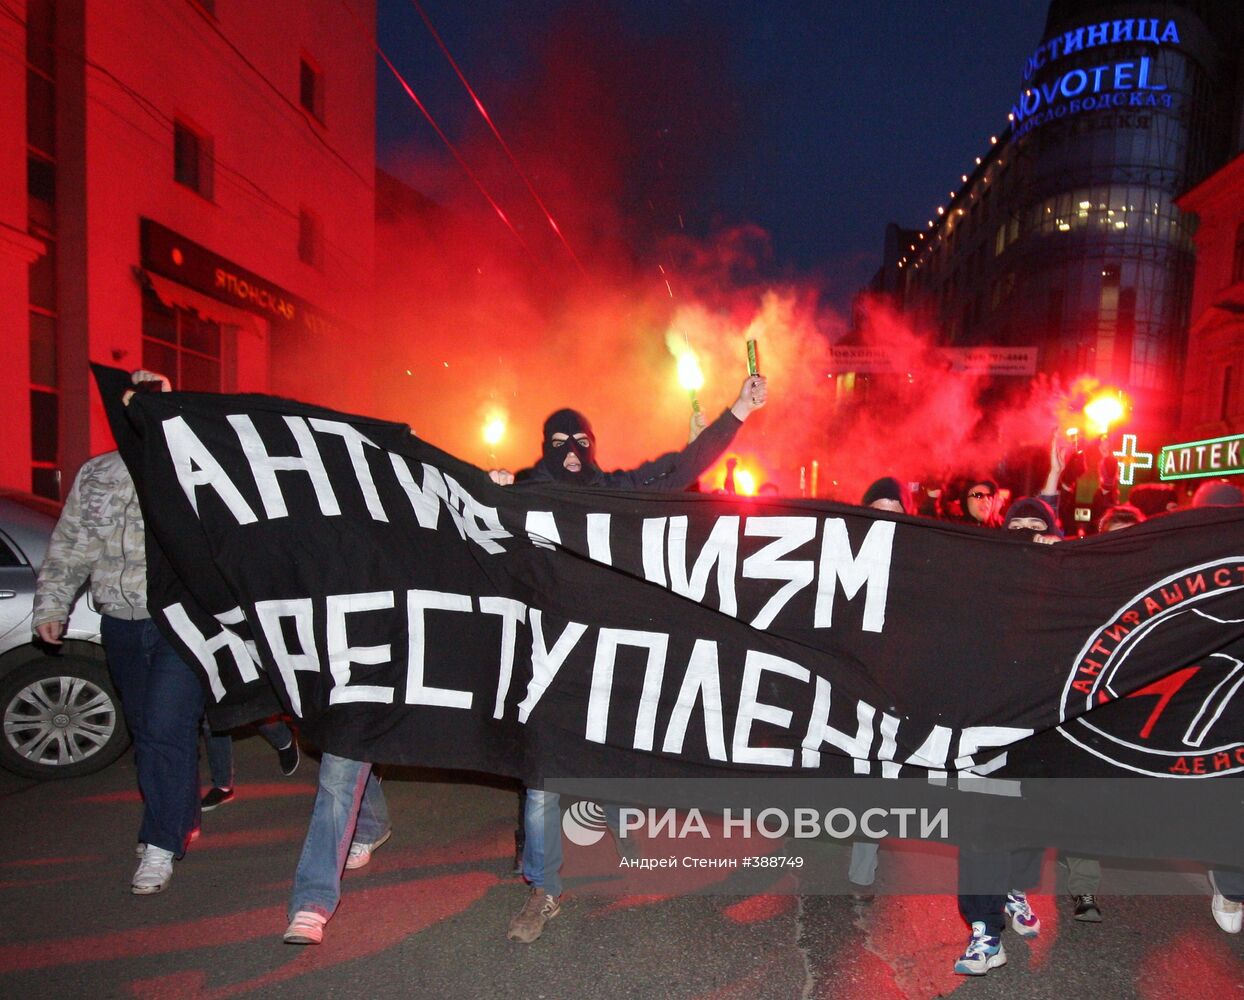 Несанкционированный марш движения "Антифа" в Москве